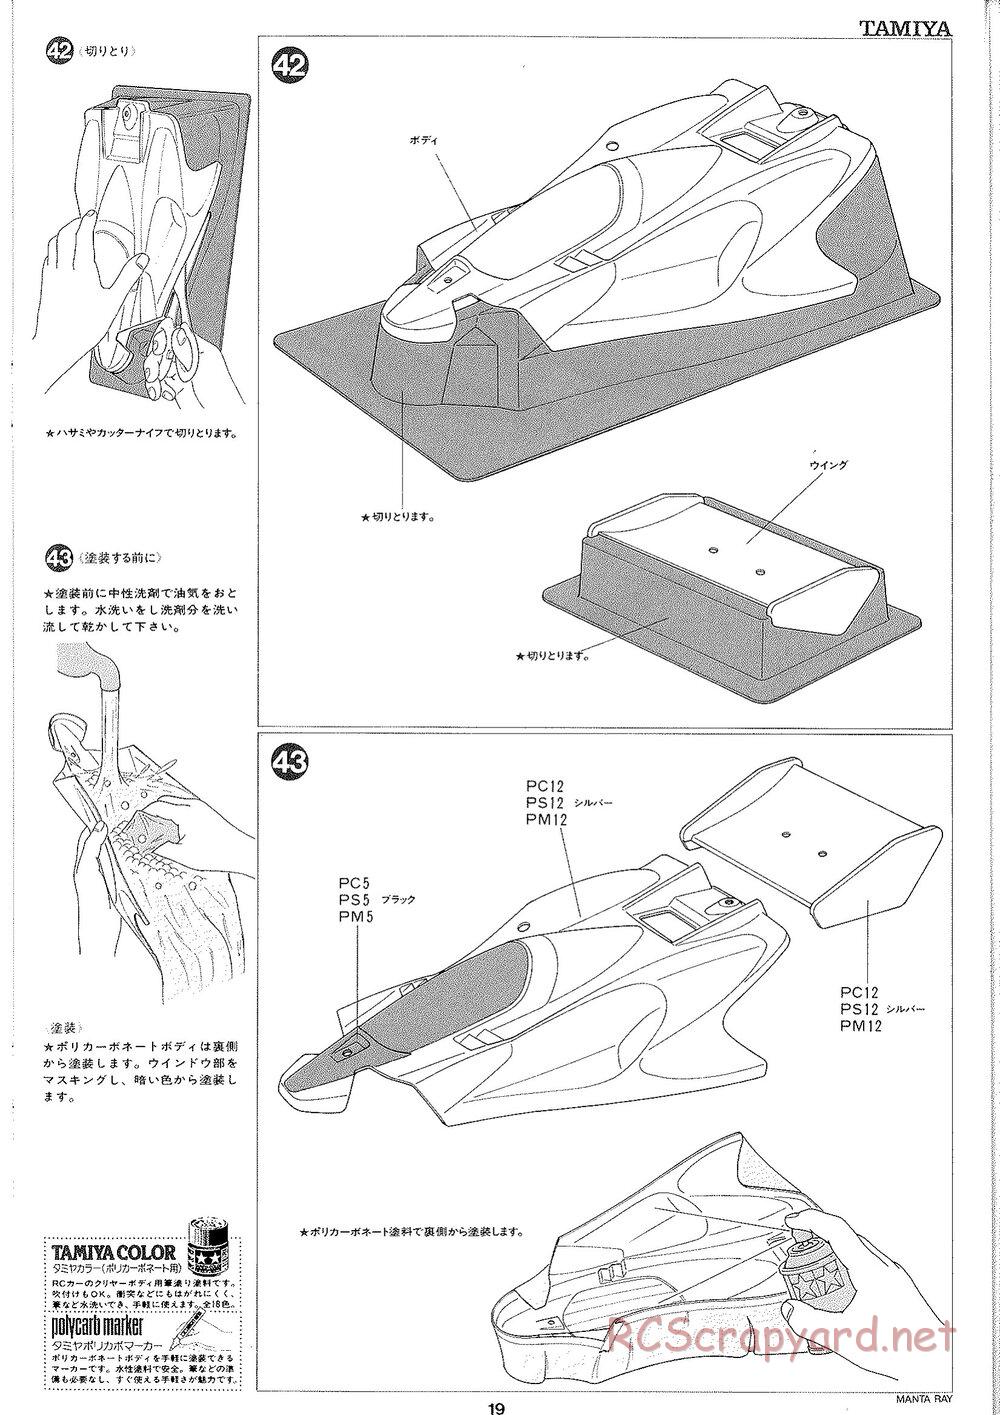 Tamiya - Manta Ray 2005 - DF-01 Chassis - Manual - Page 20